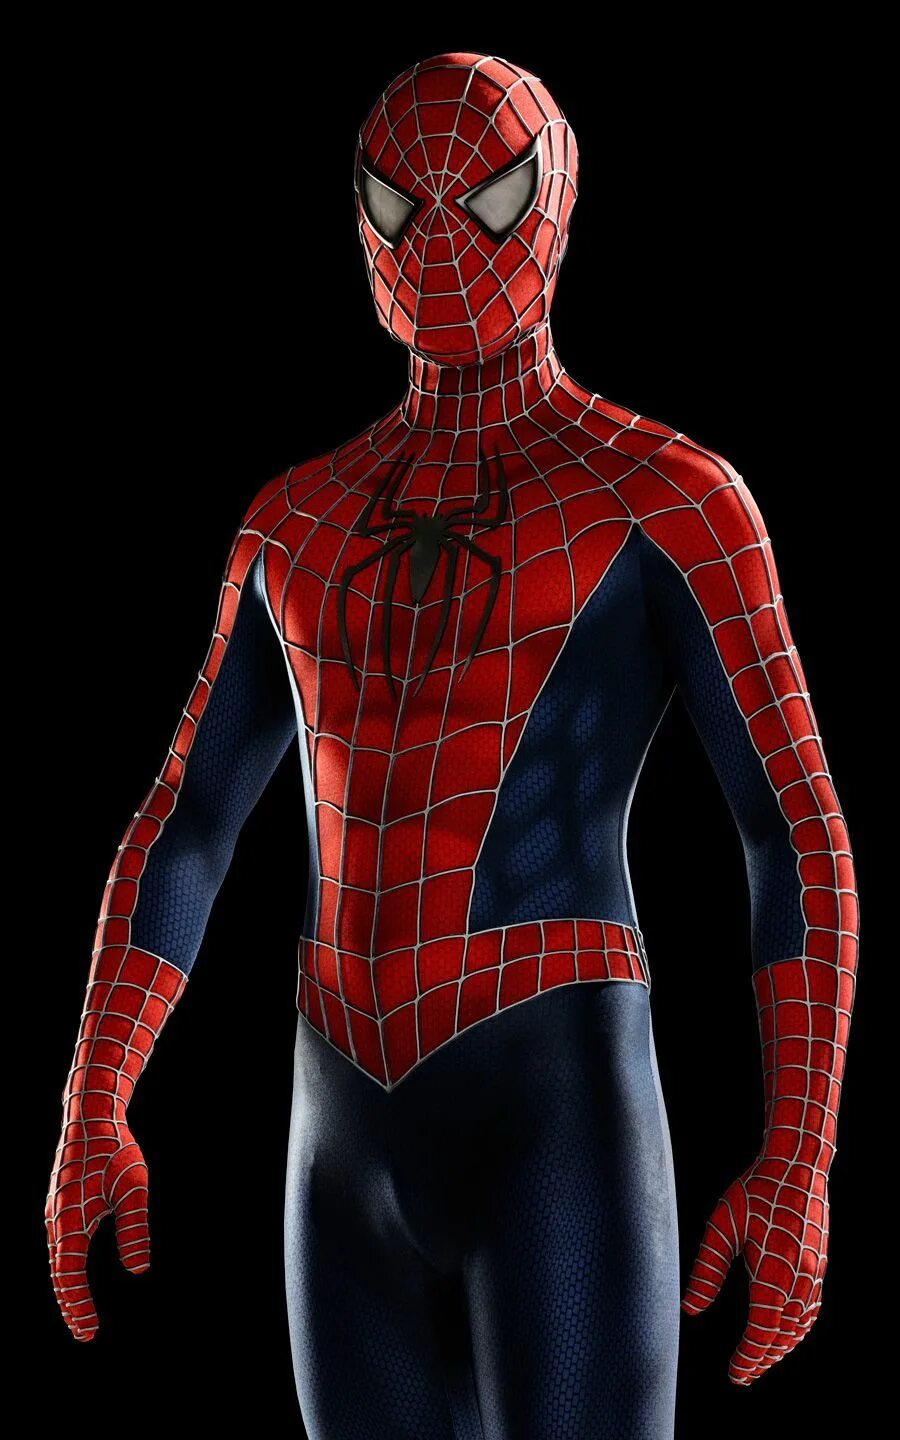 Спайдермен все части. Sam Raimi Spider man Suit 2002. Костюм Spider man 2002. Человек паук Сэма Рэйми 3. Человек паук Сэма Рэйми в полный рост.